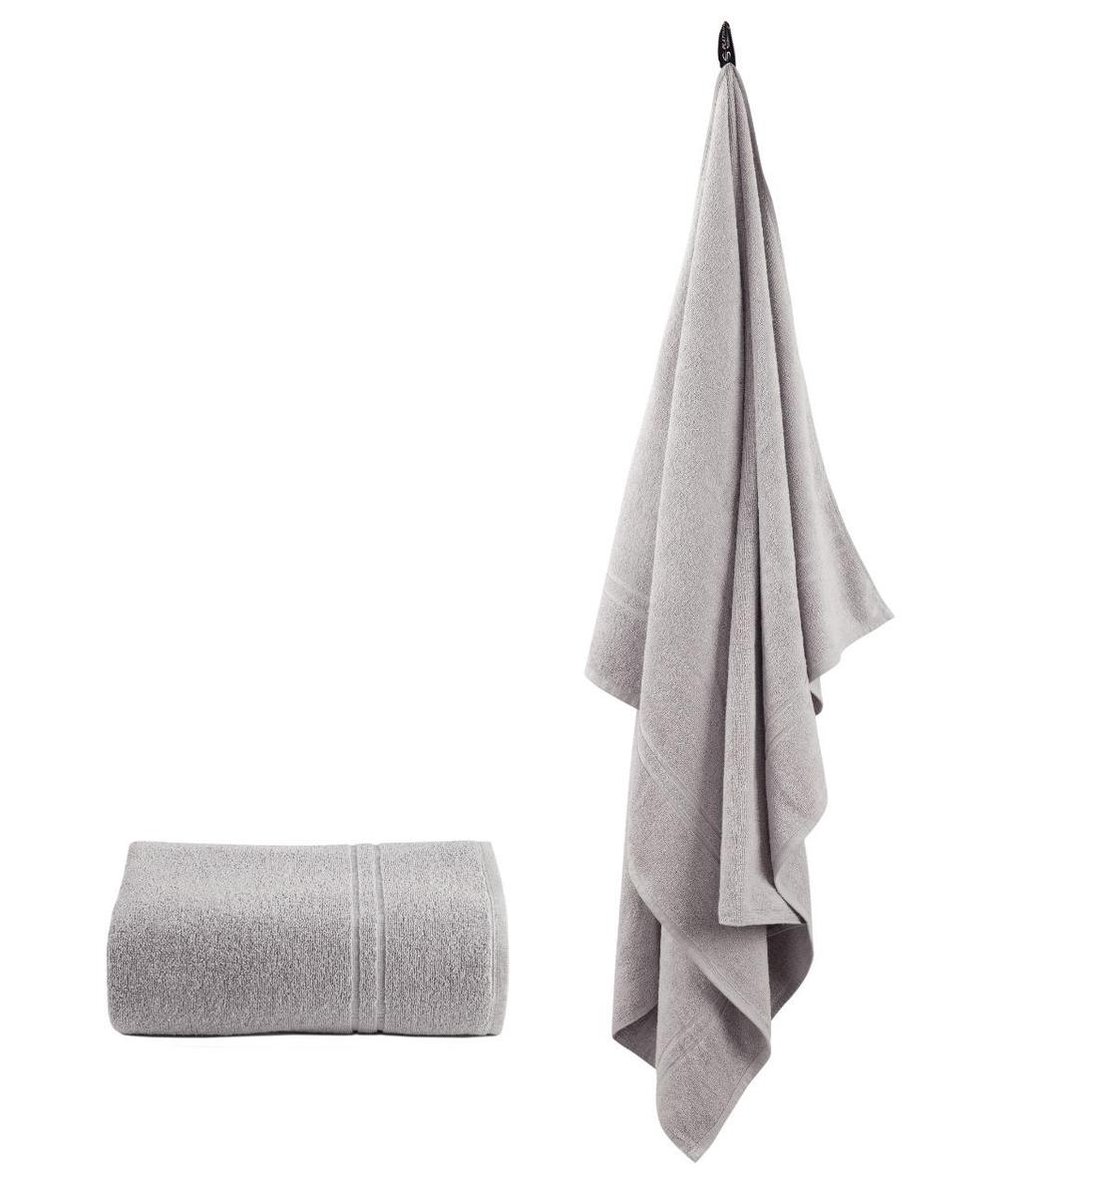 Homéé grote handdoeken grijs 100x150cm set van 2 stuks 100% katoen badstof 450g.m²